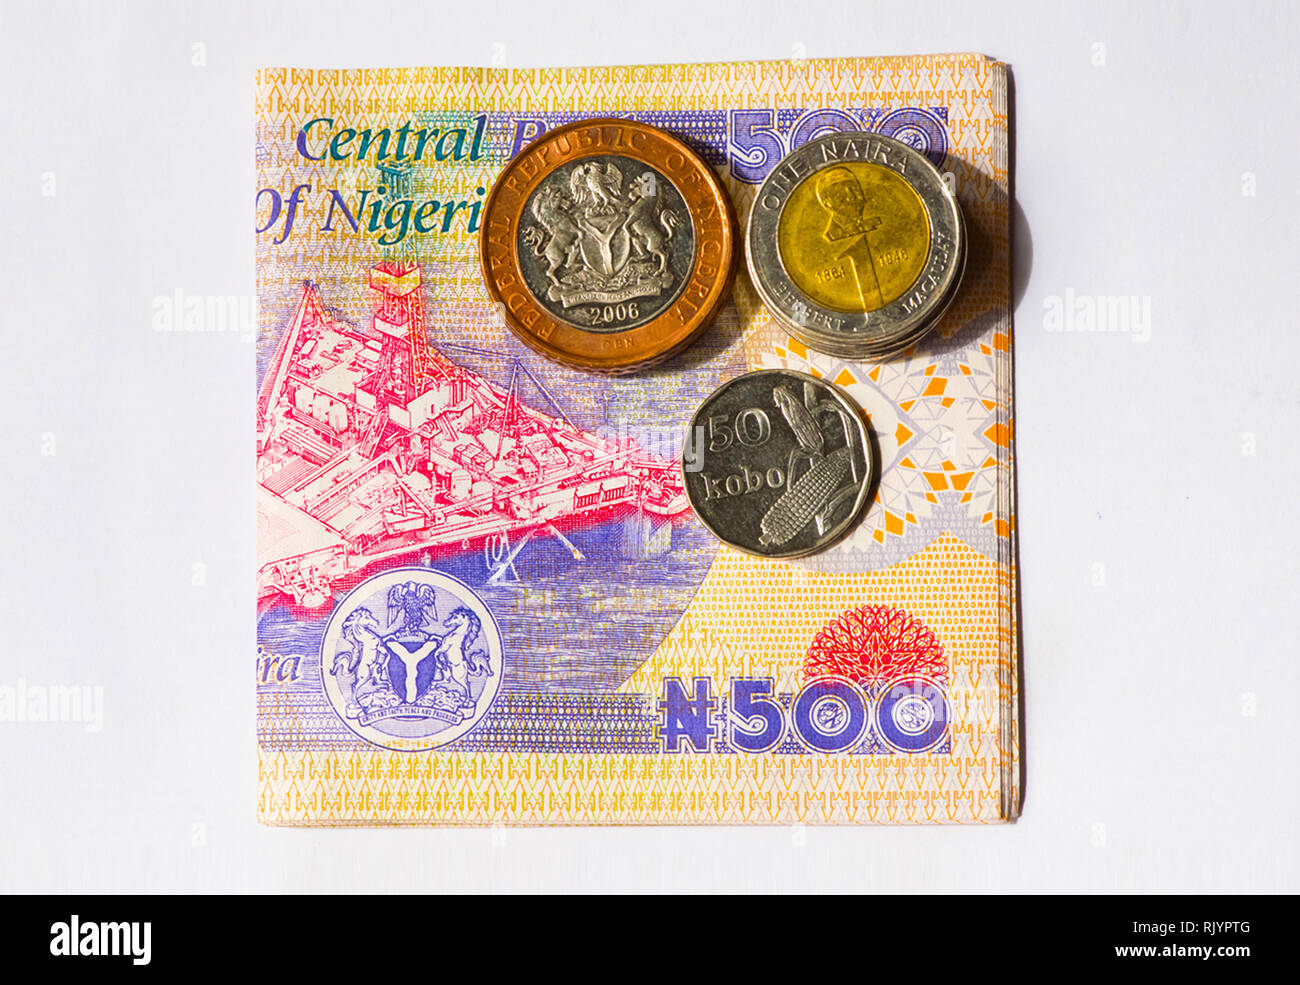 L'argent du Nigeria - une liasse de 500 naira note avec quelques pièces de différentes dénominations Banque D'Images